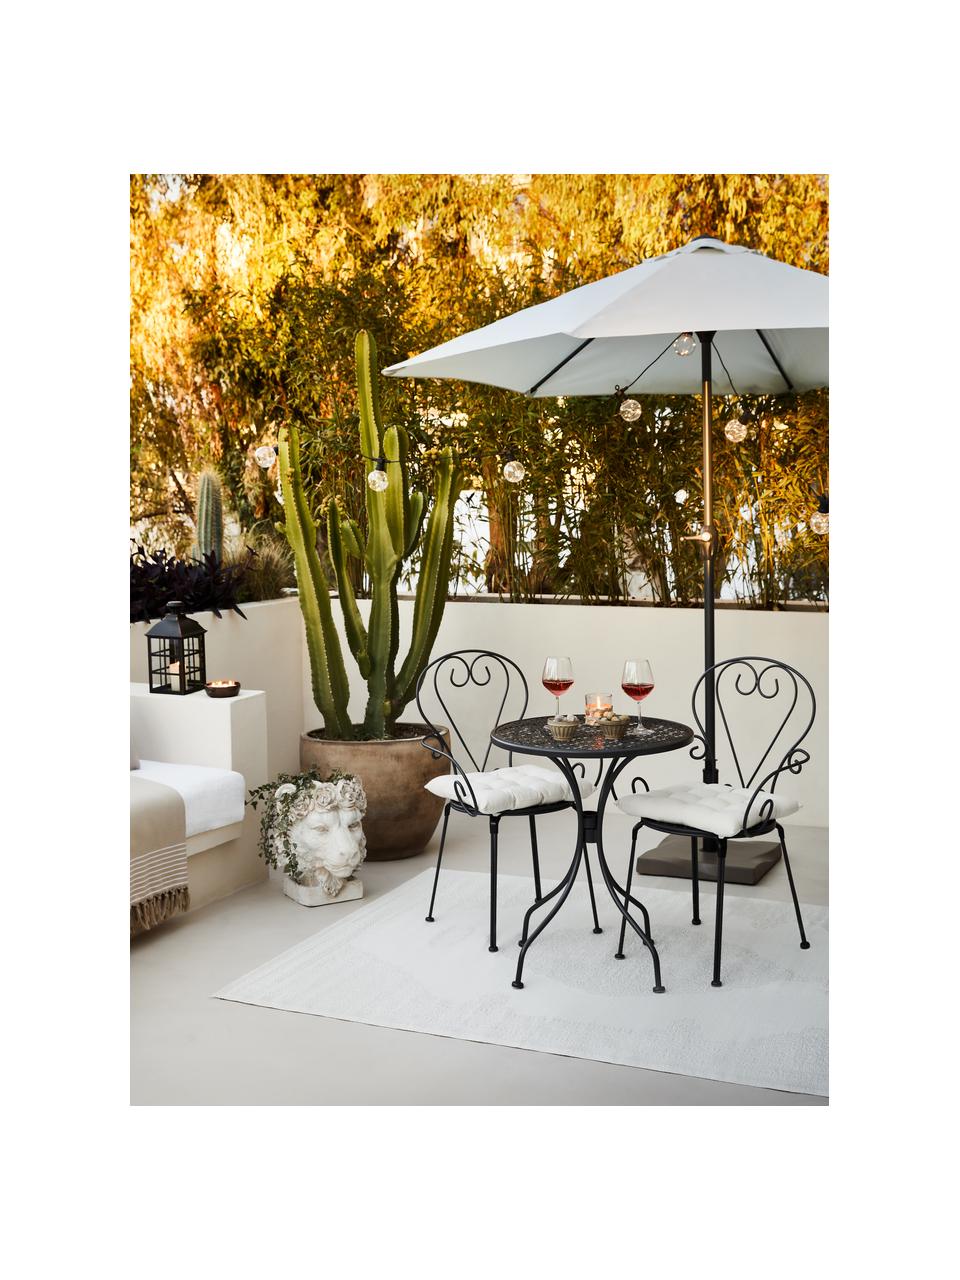 Krzesło ogrodowe z podłokietnikami Etienne, 2 szt., Ciemny szary, S 49 x  W 89 cm